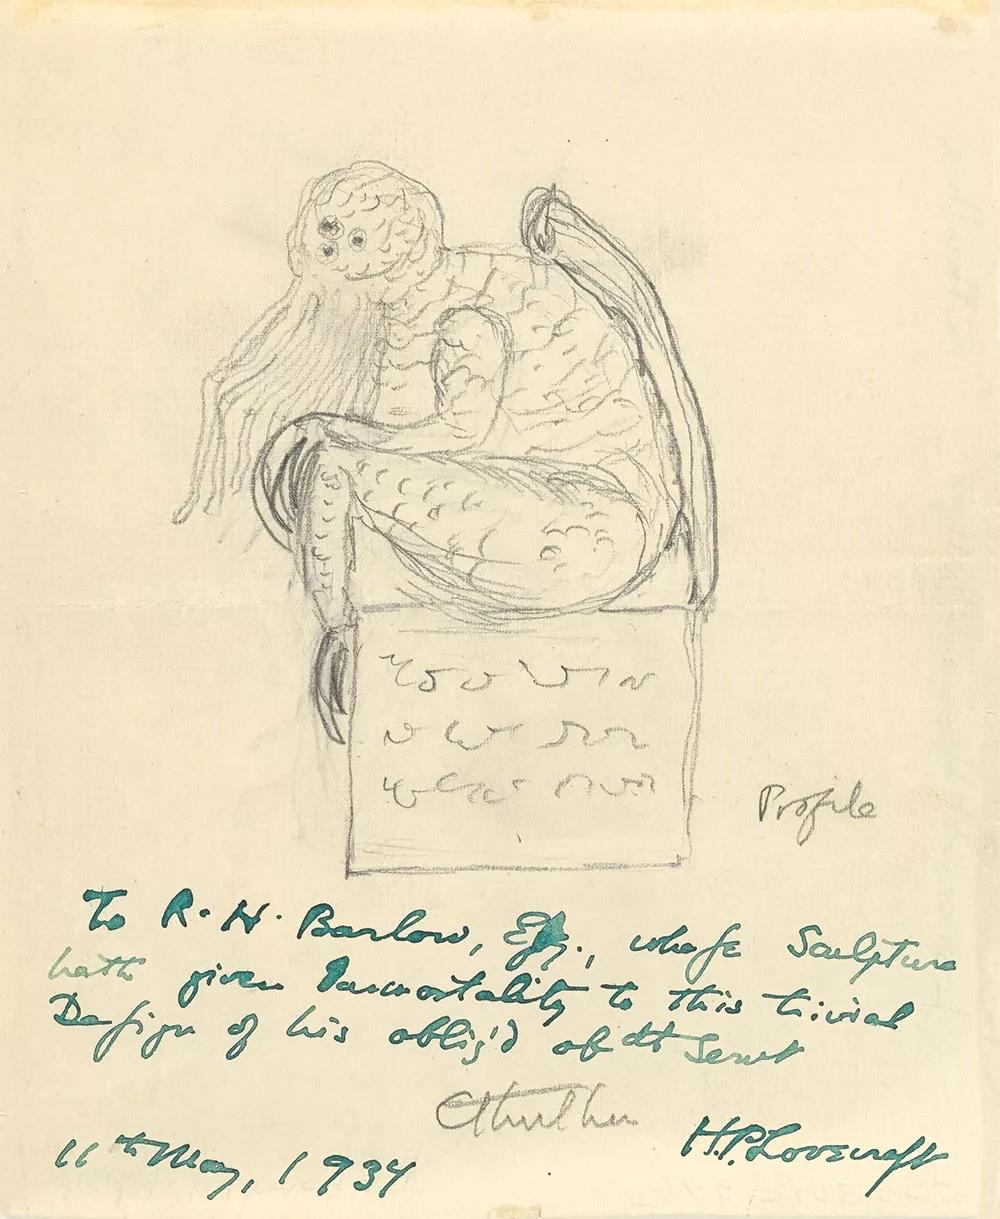 Un boceto de Cthulhu dibujado por Lovecraft, el 11 de mayo de 1934.